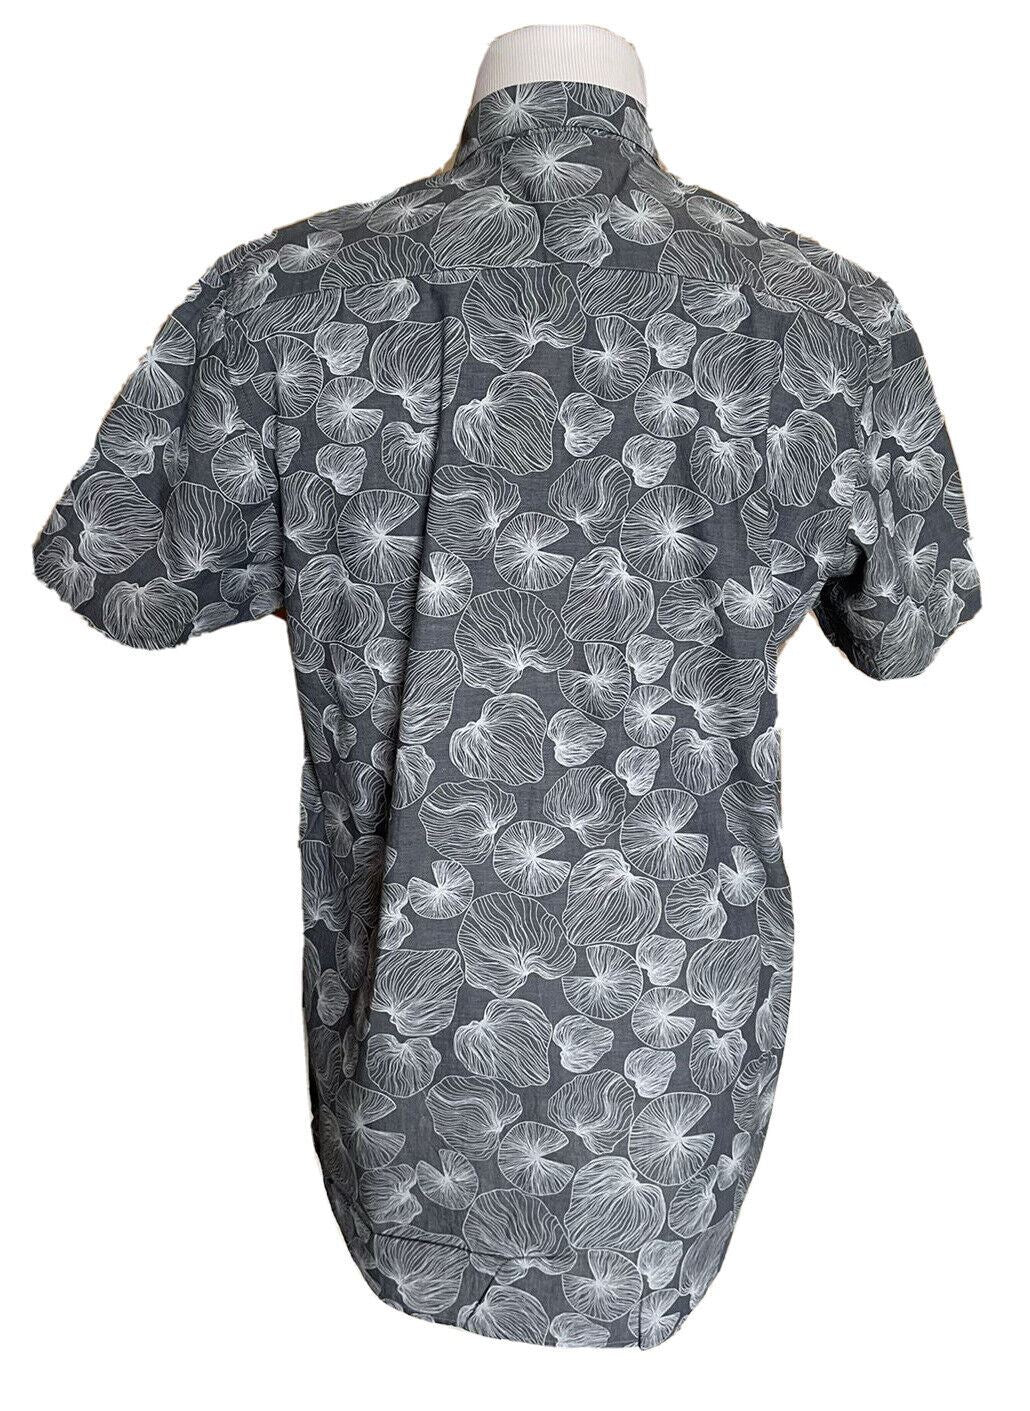 Мужская классическая рубашка из льна/хлопка с короткими рукавами темно-сланцевого цвета NWT Civil Society, большая